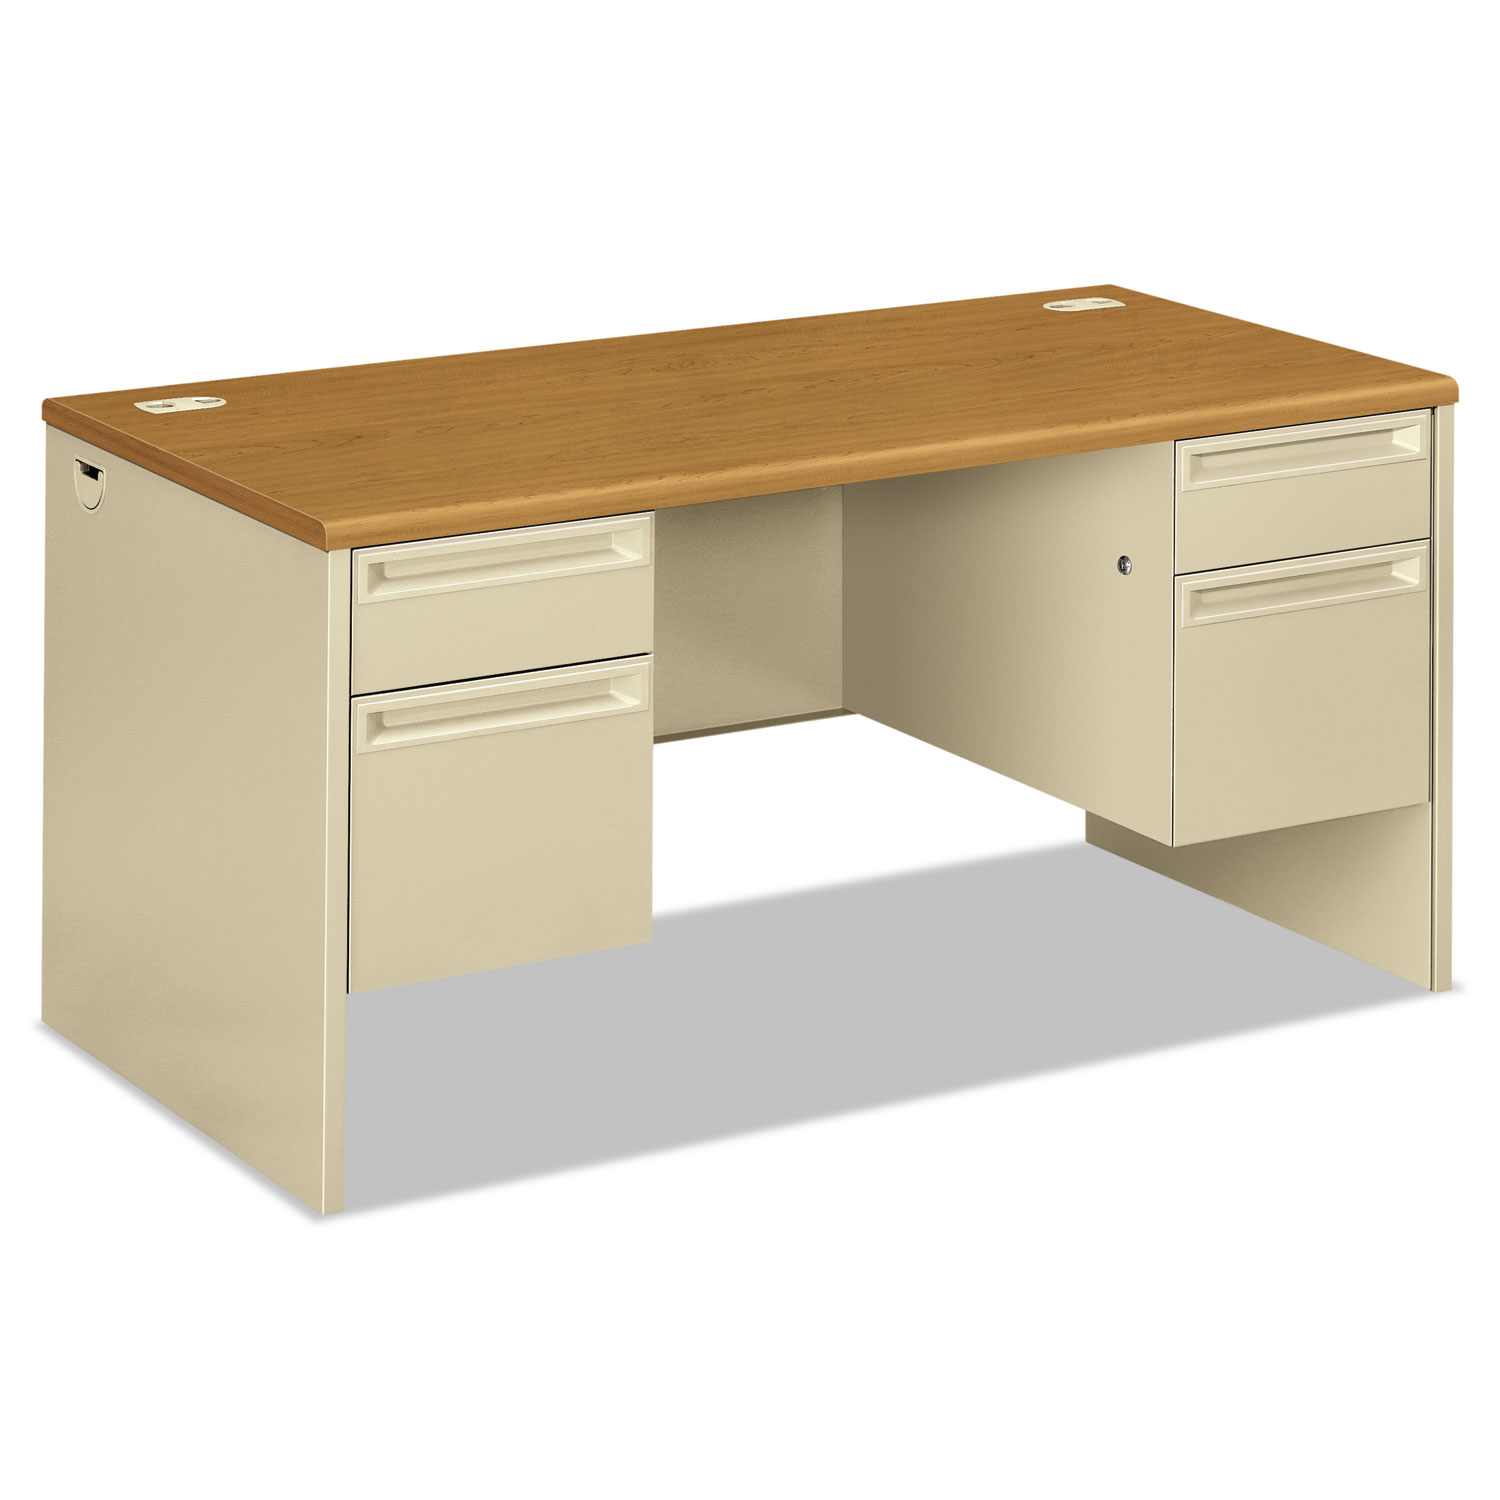  HON H38155.C.L 38000 Series Double Pedestal Desk, 60w x 30d x 29.5h, Harvest/Putty (HON38155CL) 